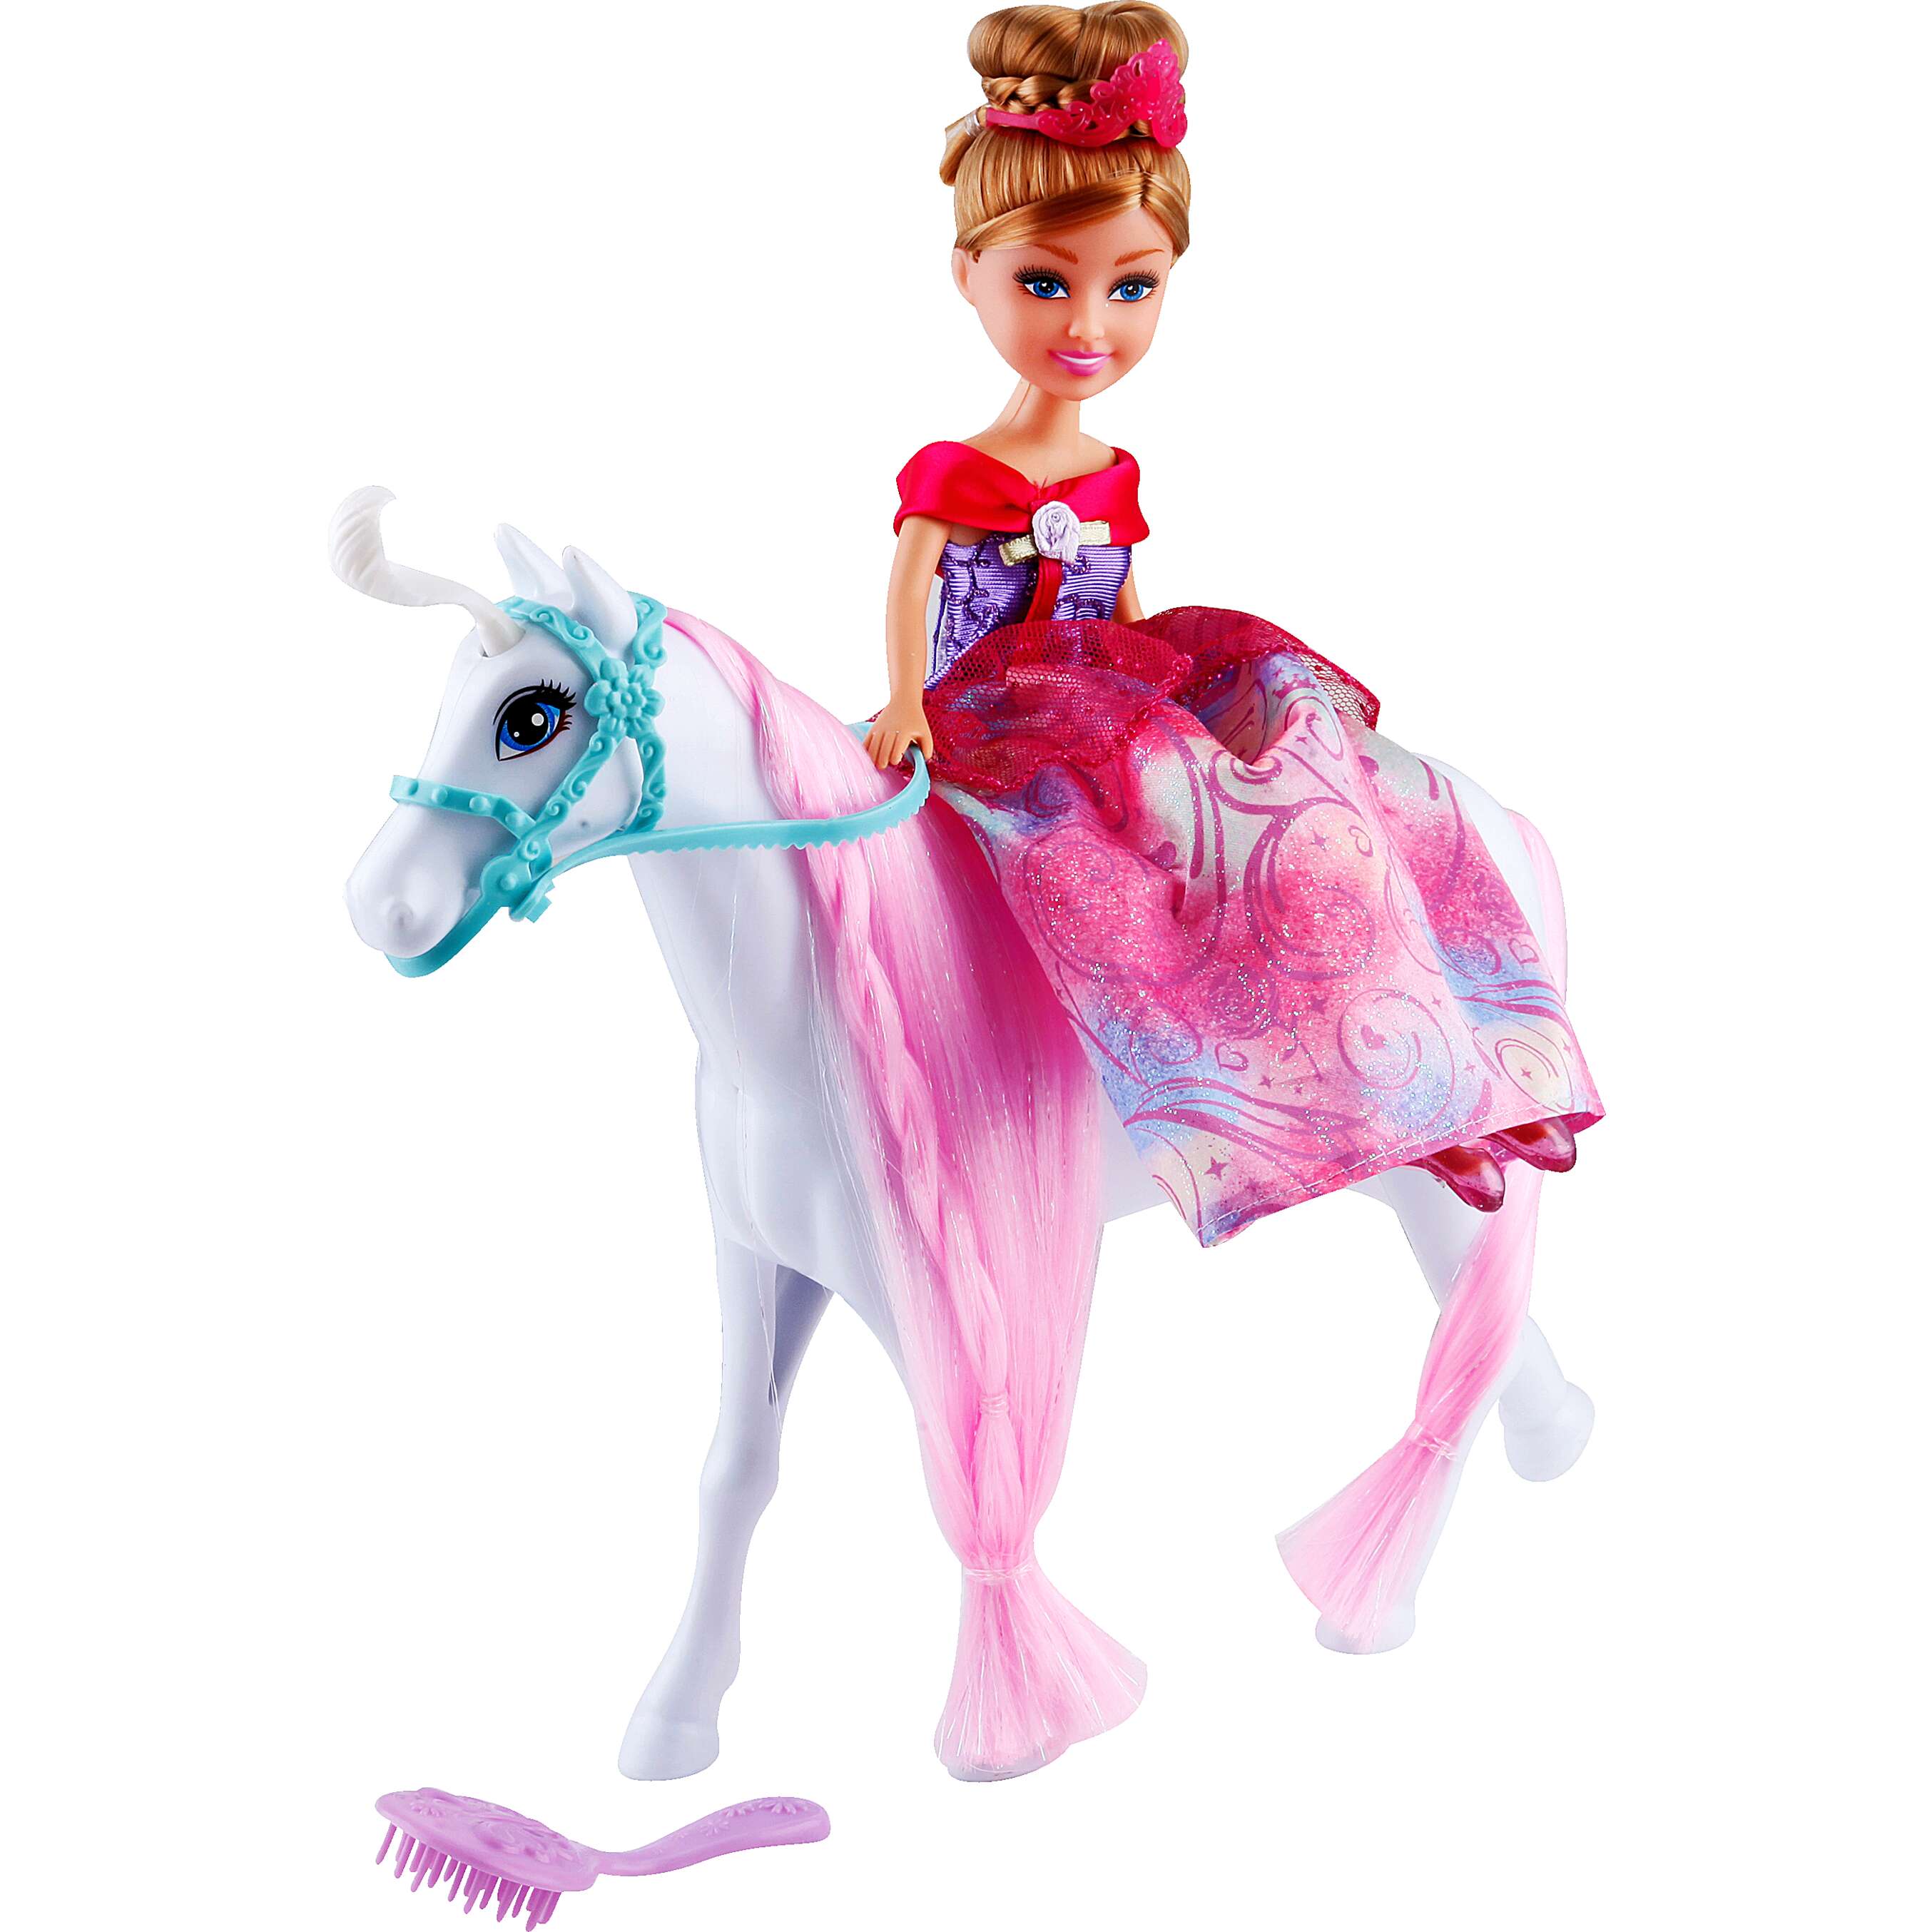 Fotografija ponude Zuru Sparkle Girlz Lutka s konjem